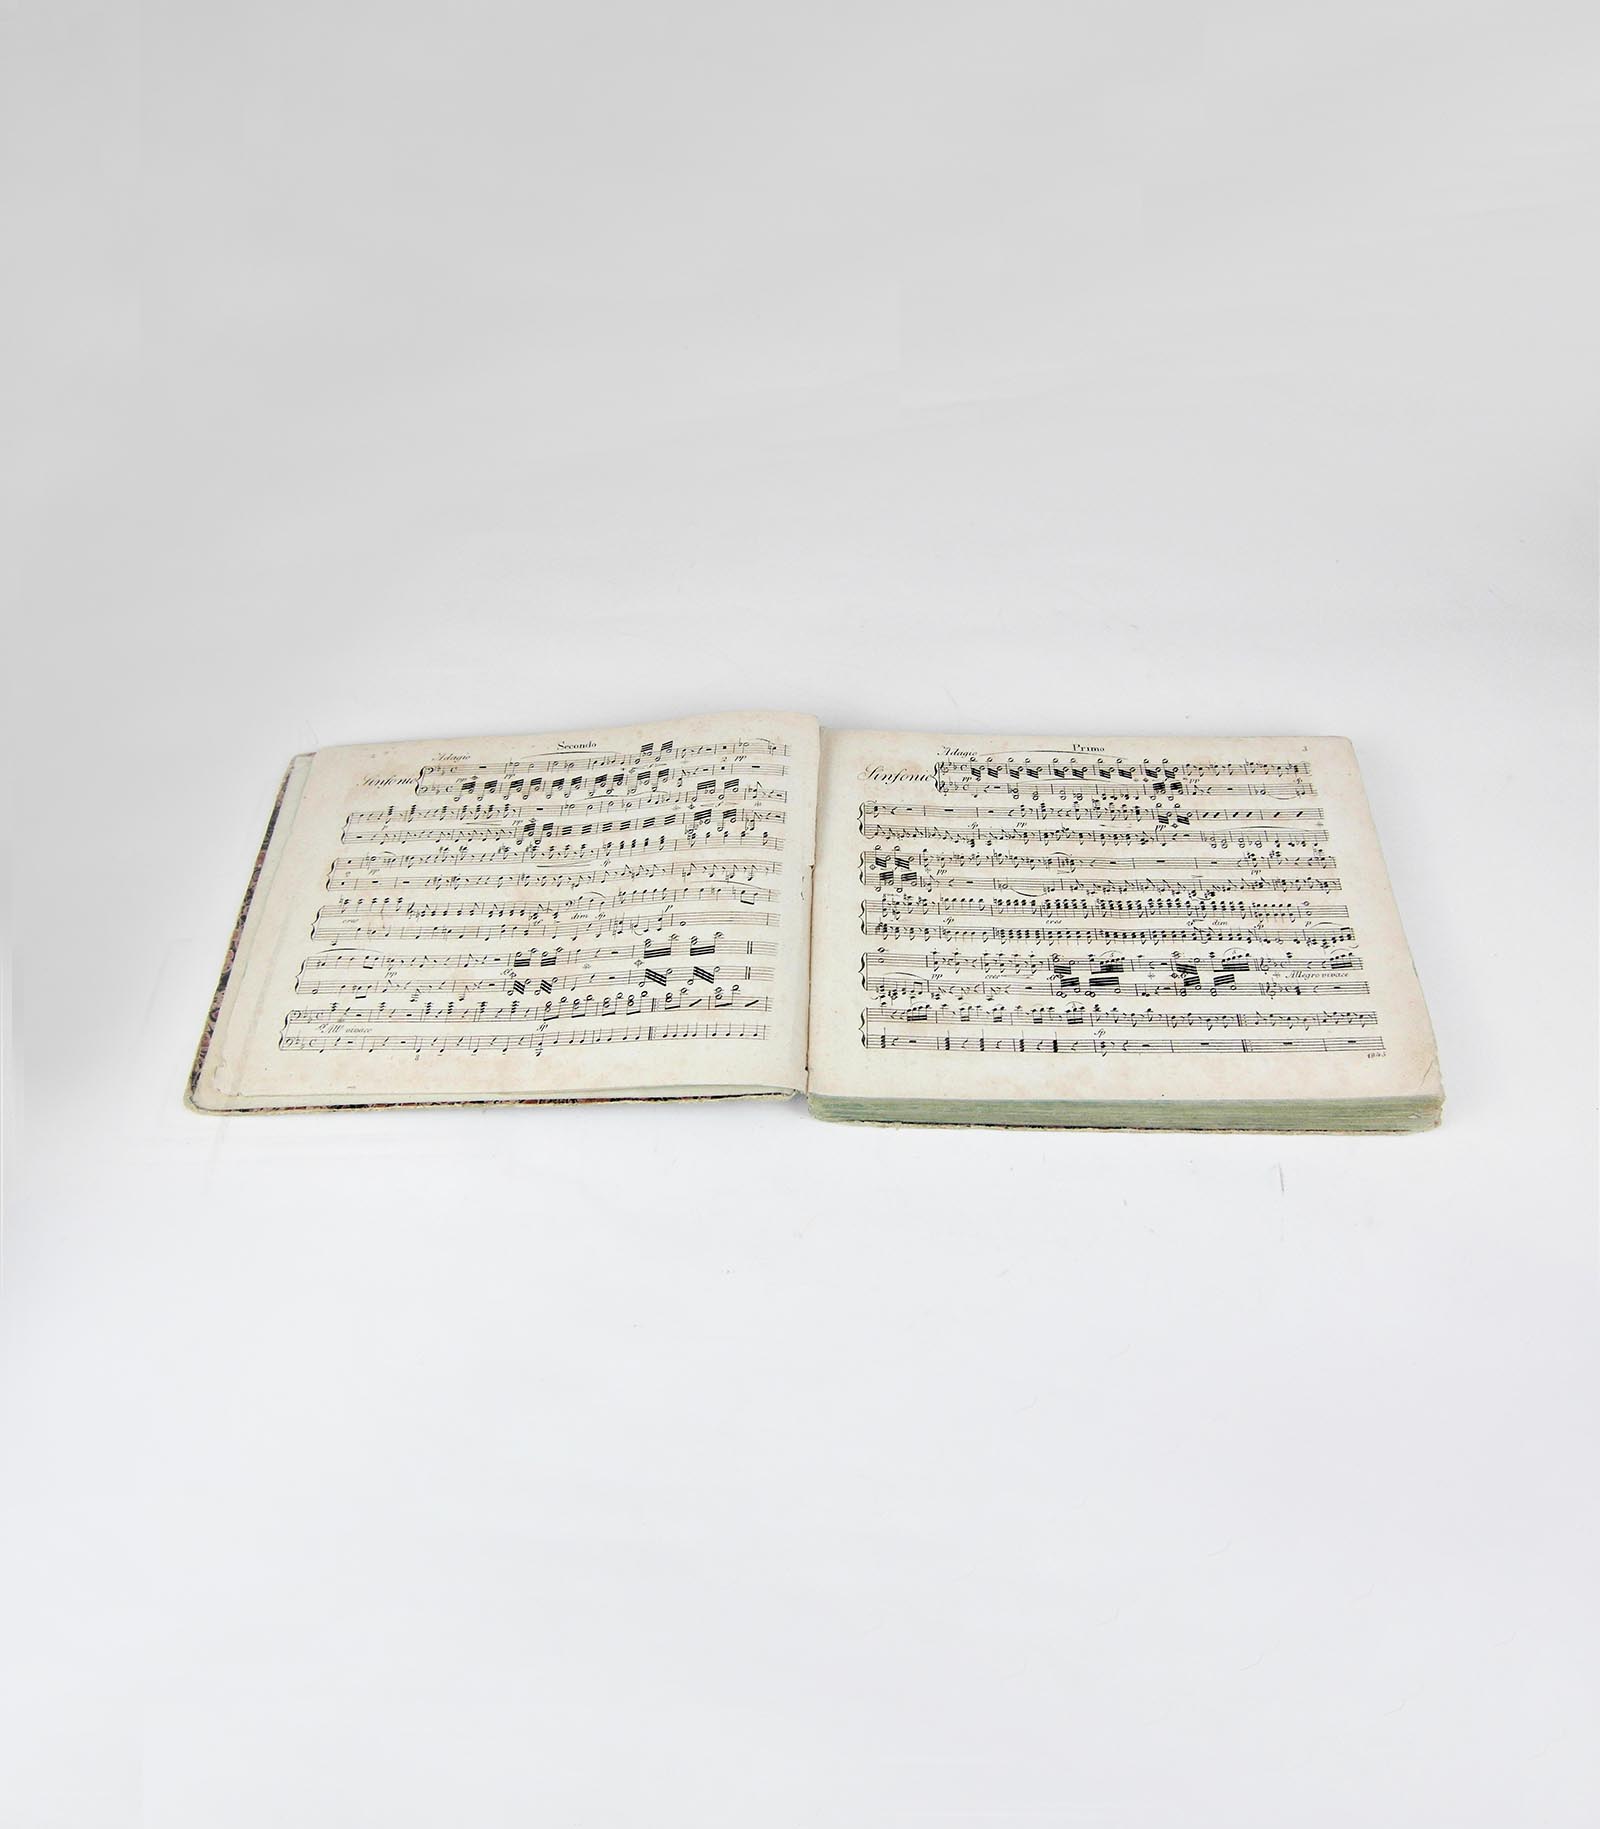 4. Sinfonie von Beethoven, Verlag Breitkopf & Härtel, Leipzig um 1820